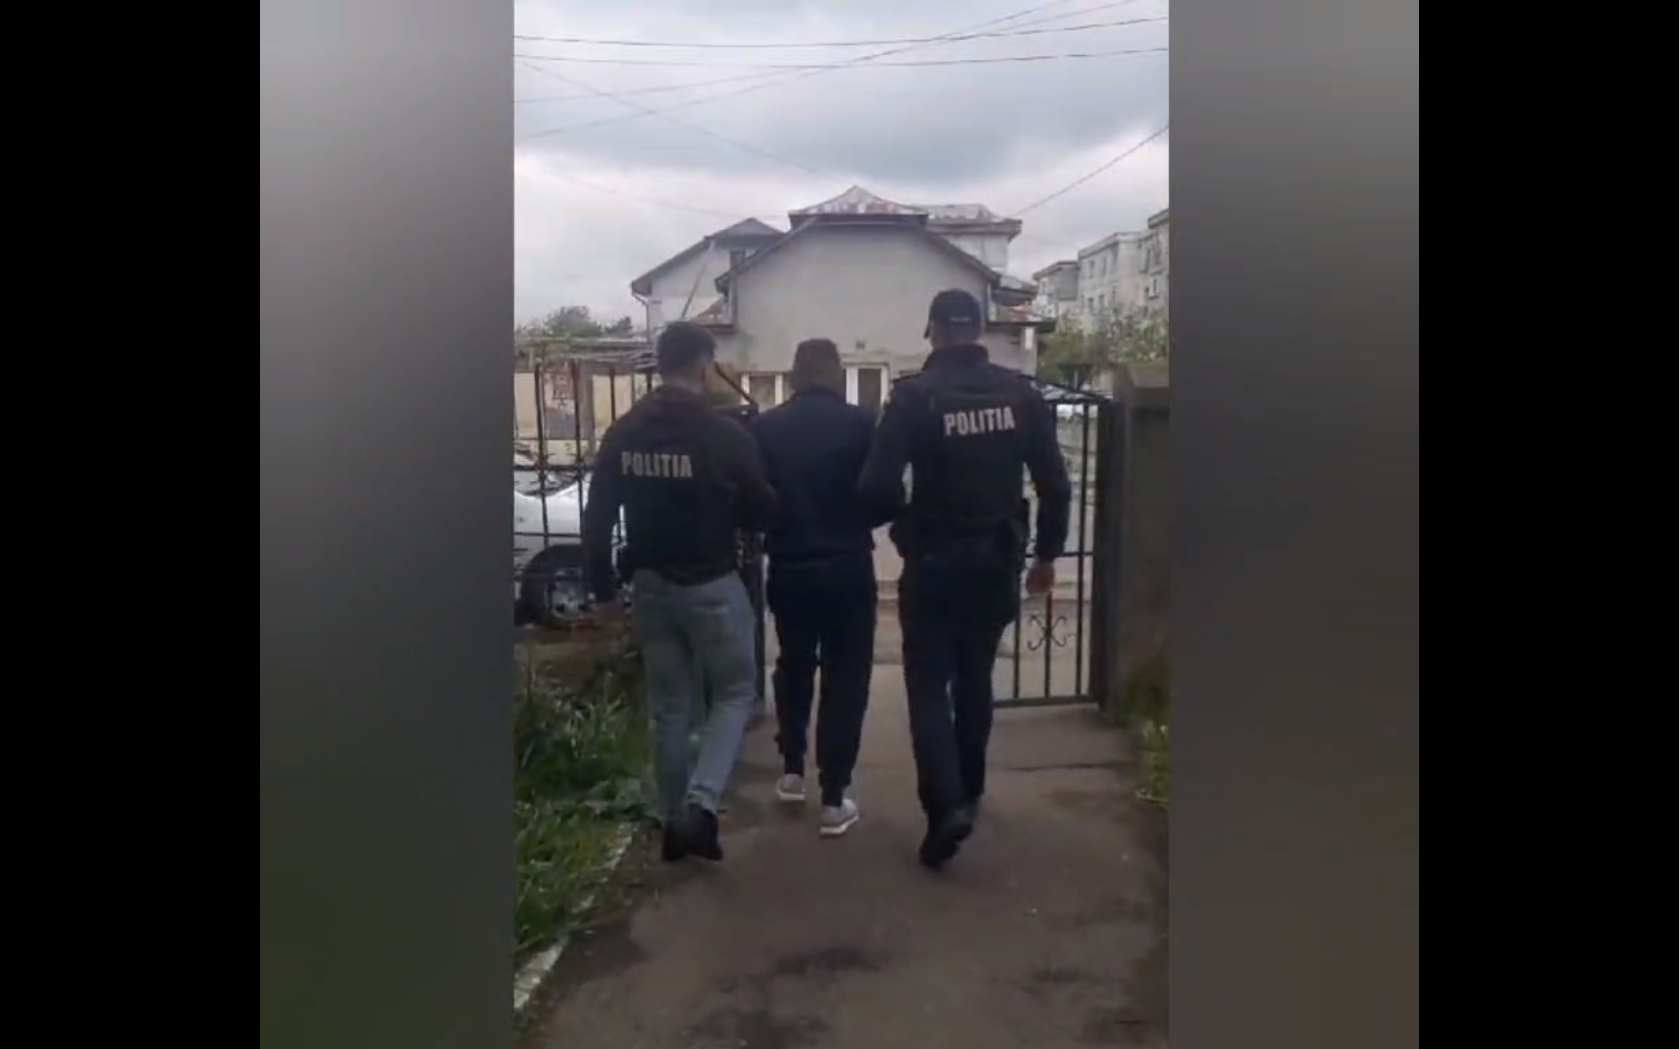 VIDEO: Şofer arestat după ce, băut, a lovit un biciclist şi a fugit, la Brăila